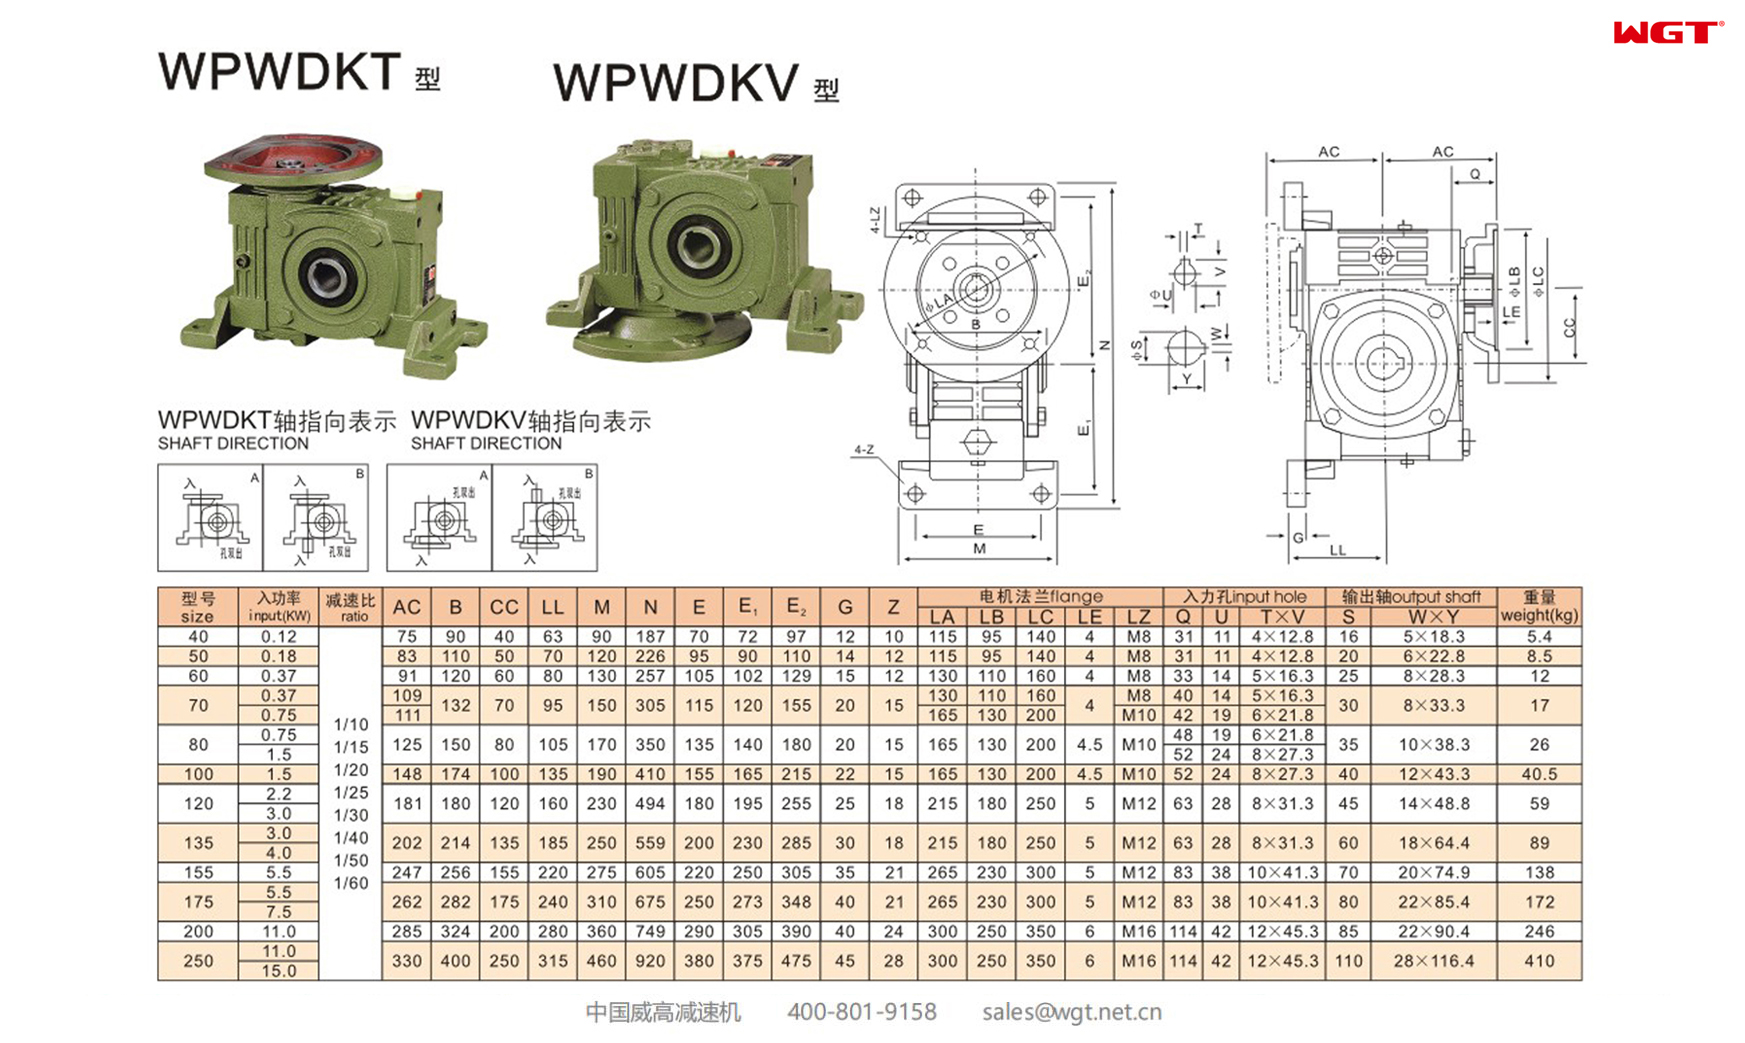 WPWDKT WPWDKV175 蜗轮减速机 万向减速机